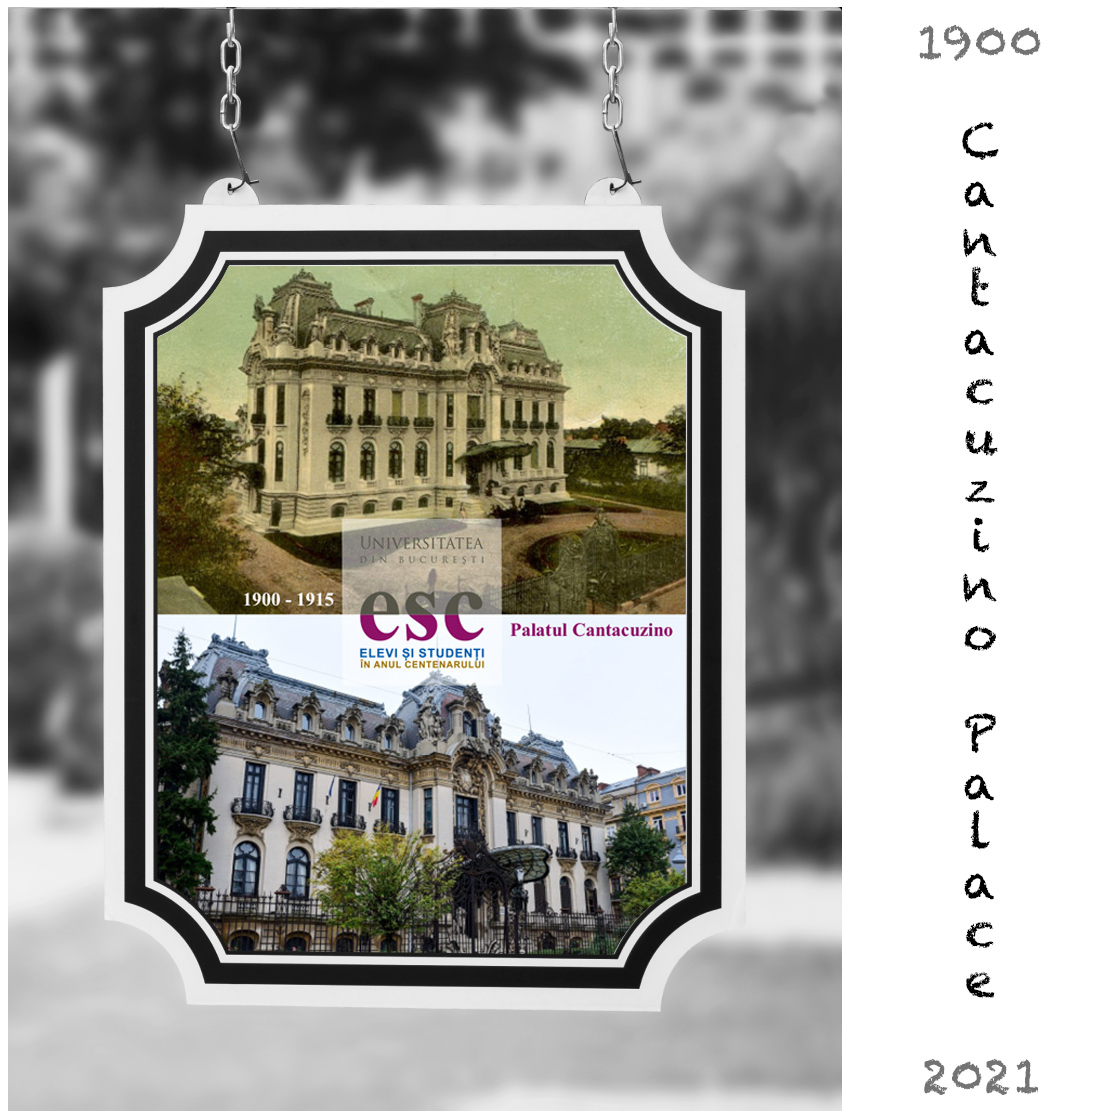 Bucharest - Cantacuzino Palace - 1900 - 2019